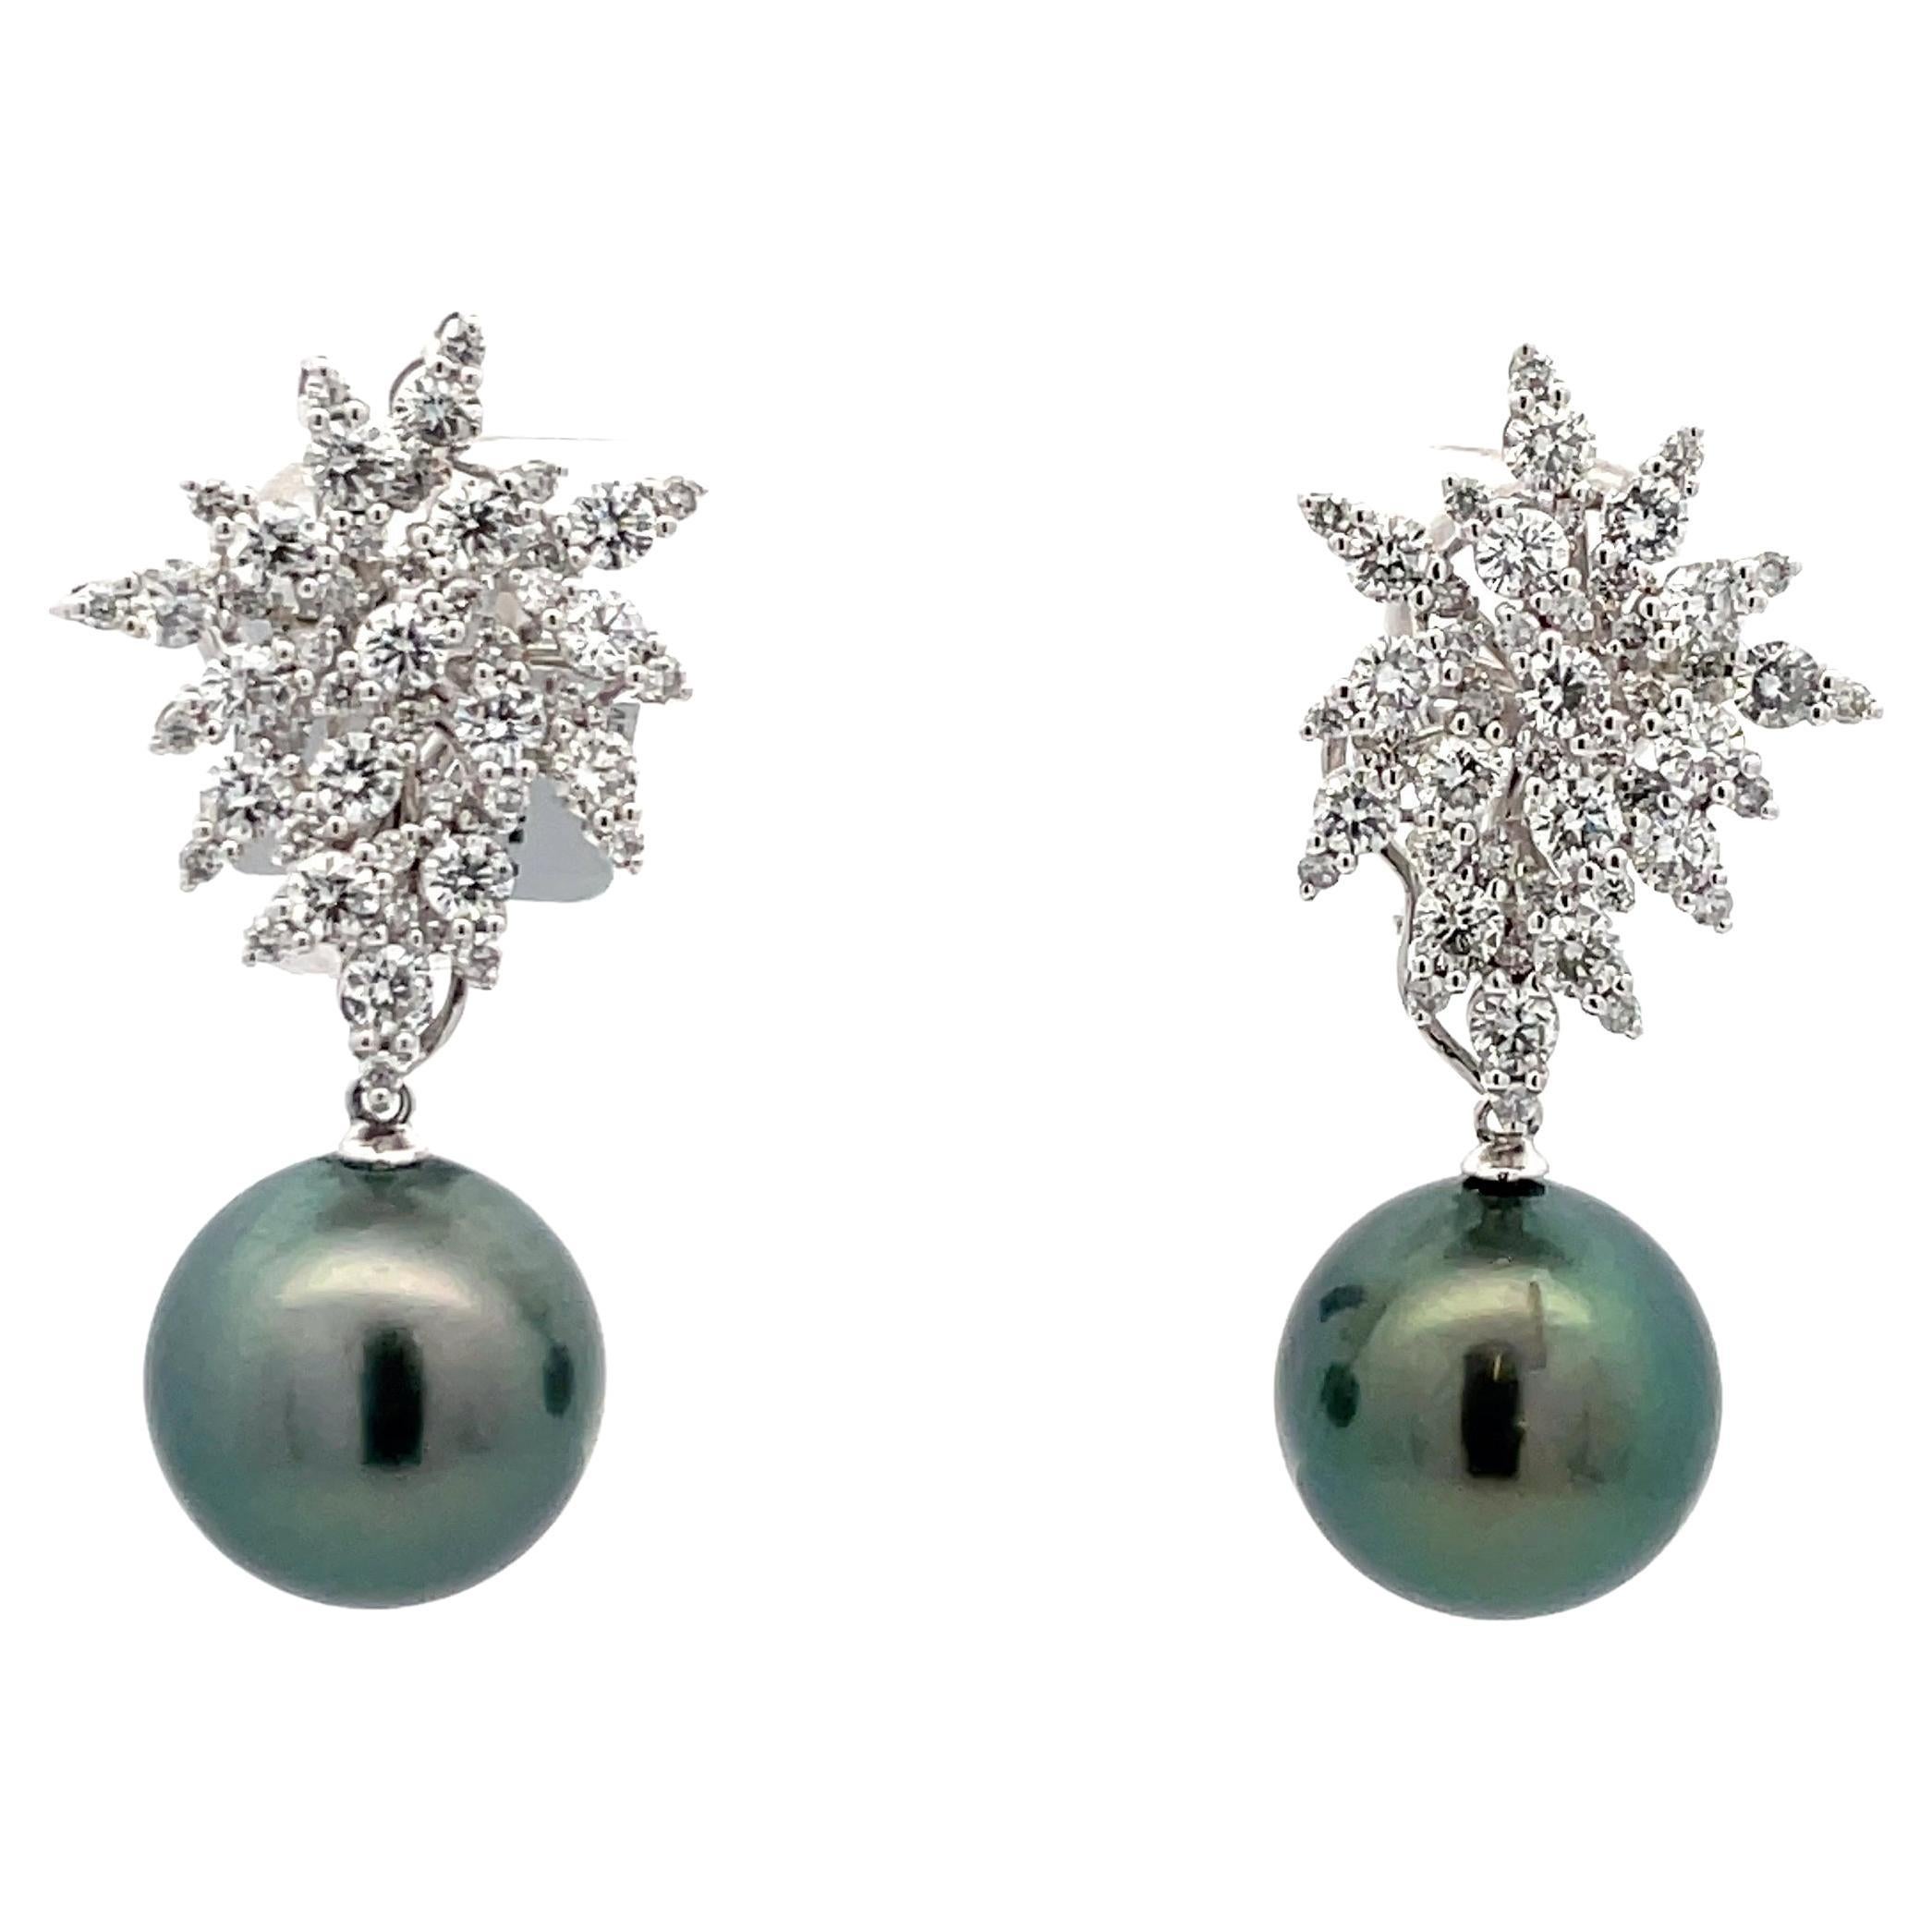 Diamond Cluster Tahitian Pearl Drop Earrings 2.88 Carats 18 Karat 13-14 MM